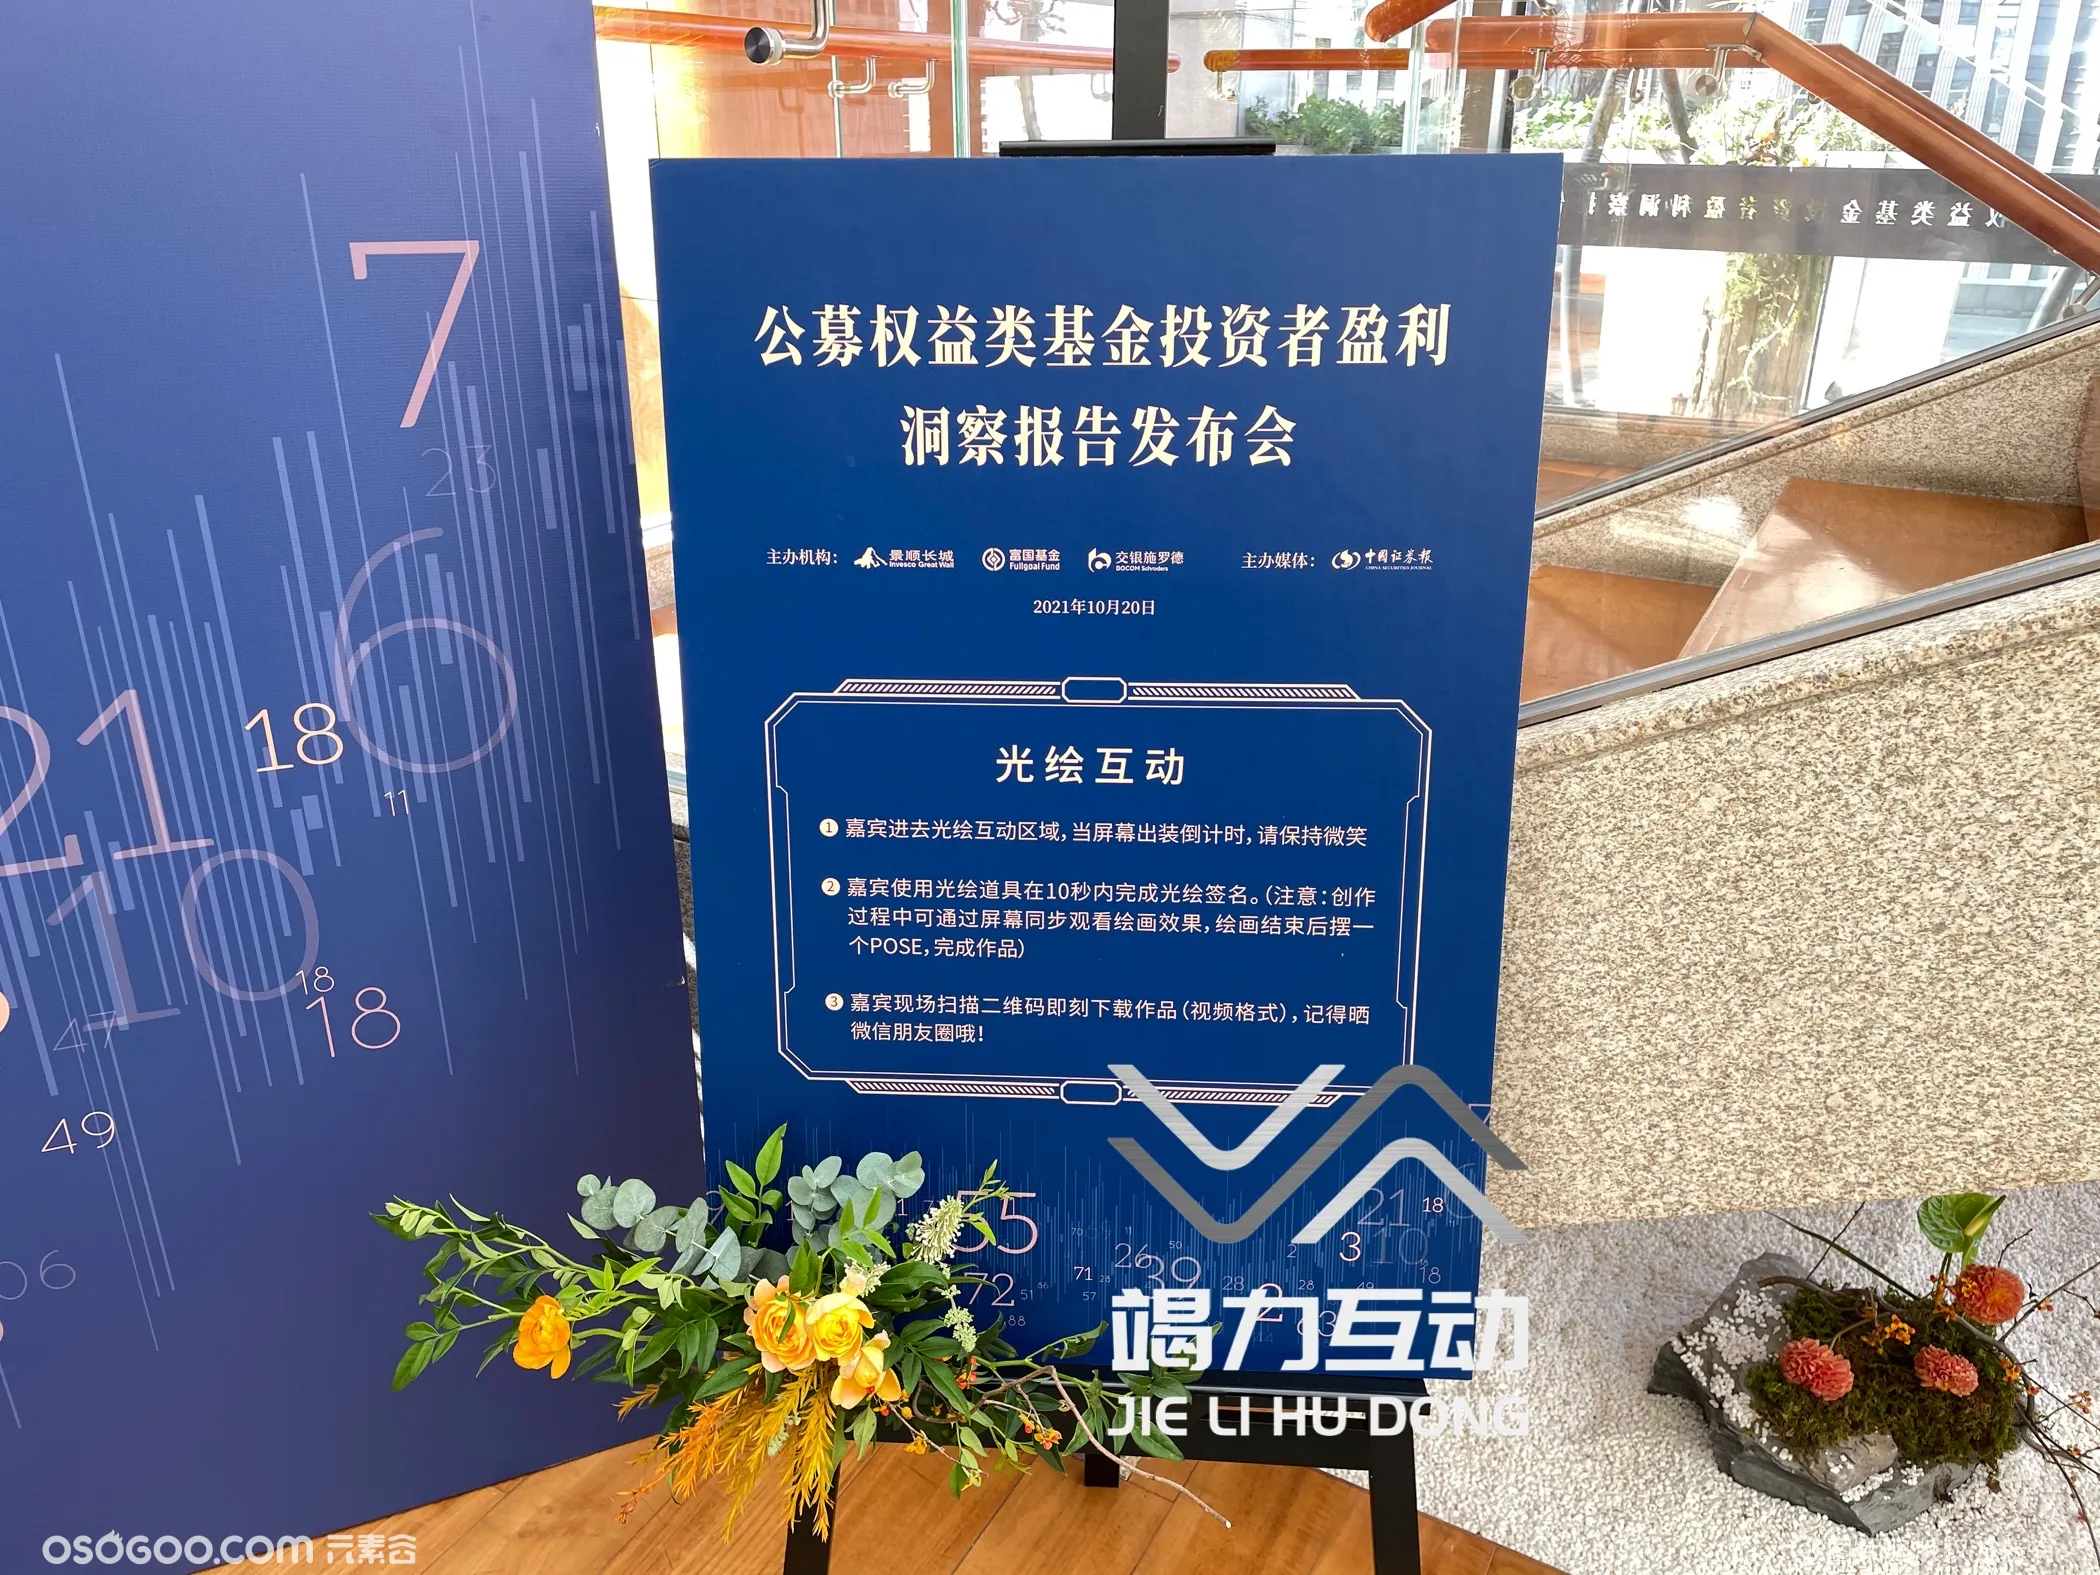 北京公募权益发布会光绘签到互动装置